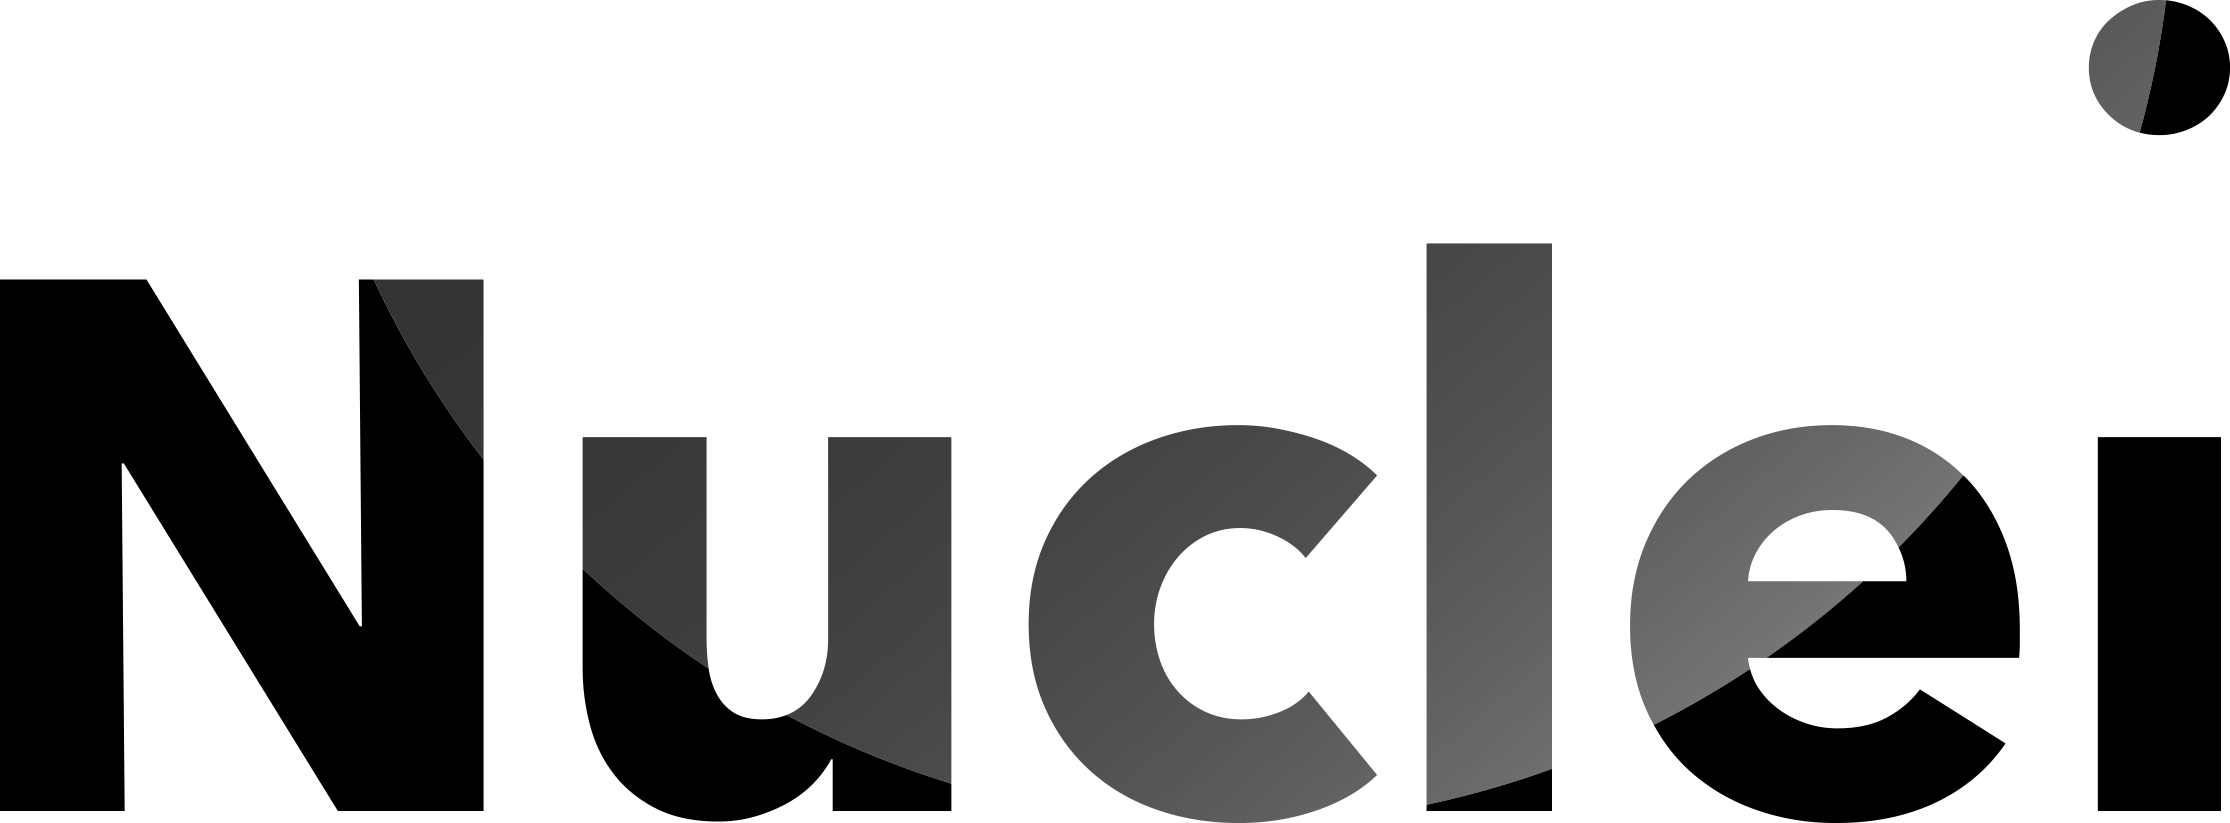 logo for Nuclei Ltd